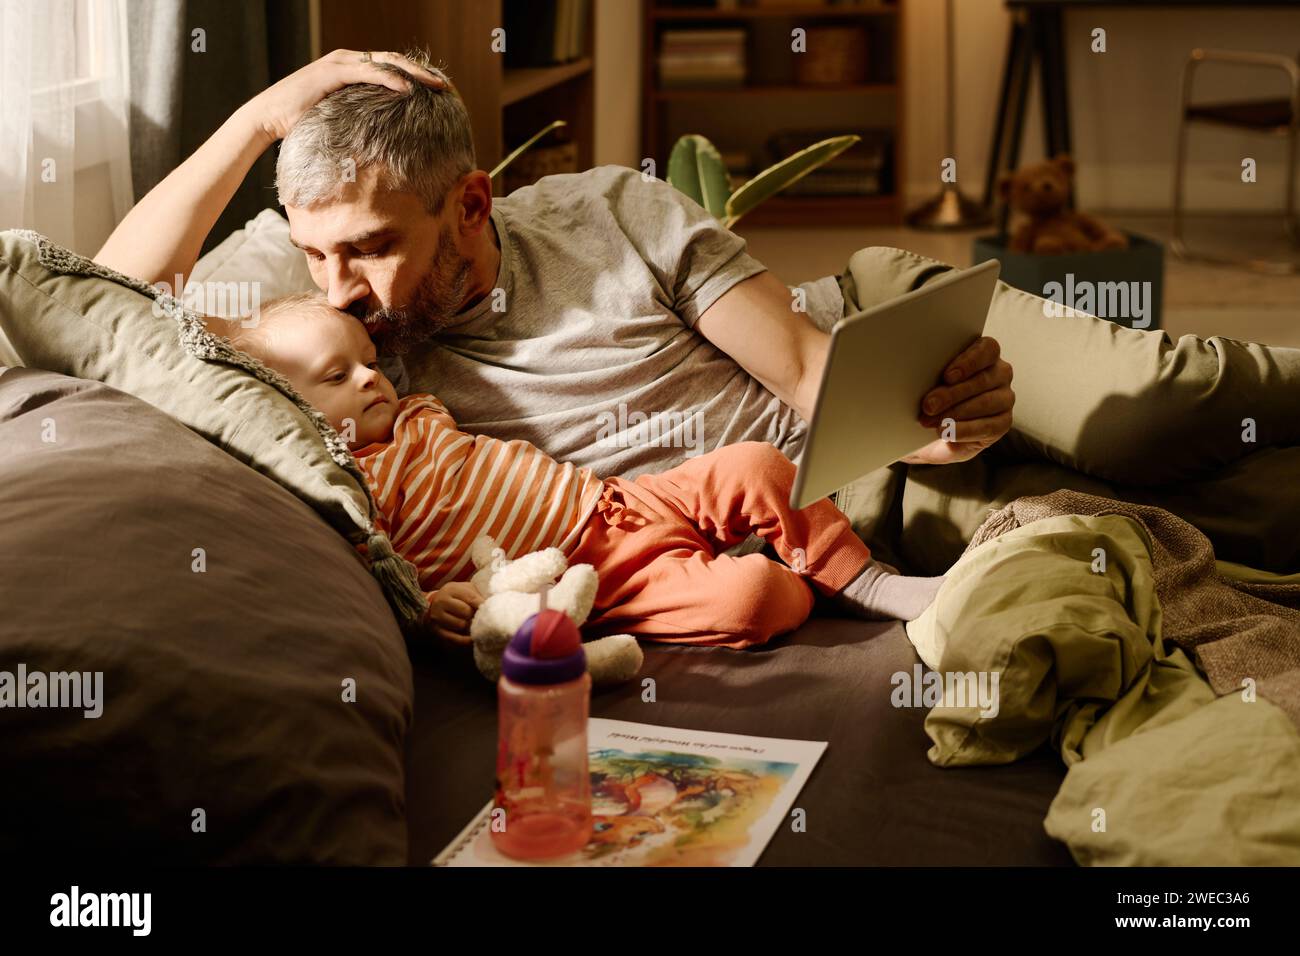 Mann mit grauen Haaren, der seinen niedlichen Sohn küsst, der neben ihm liegt und auf den Bildschirm eines Tablets blickt, der von reifem Vater gehalten wird Stockfoto